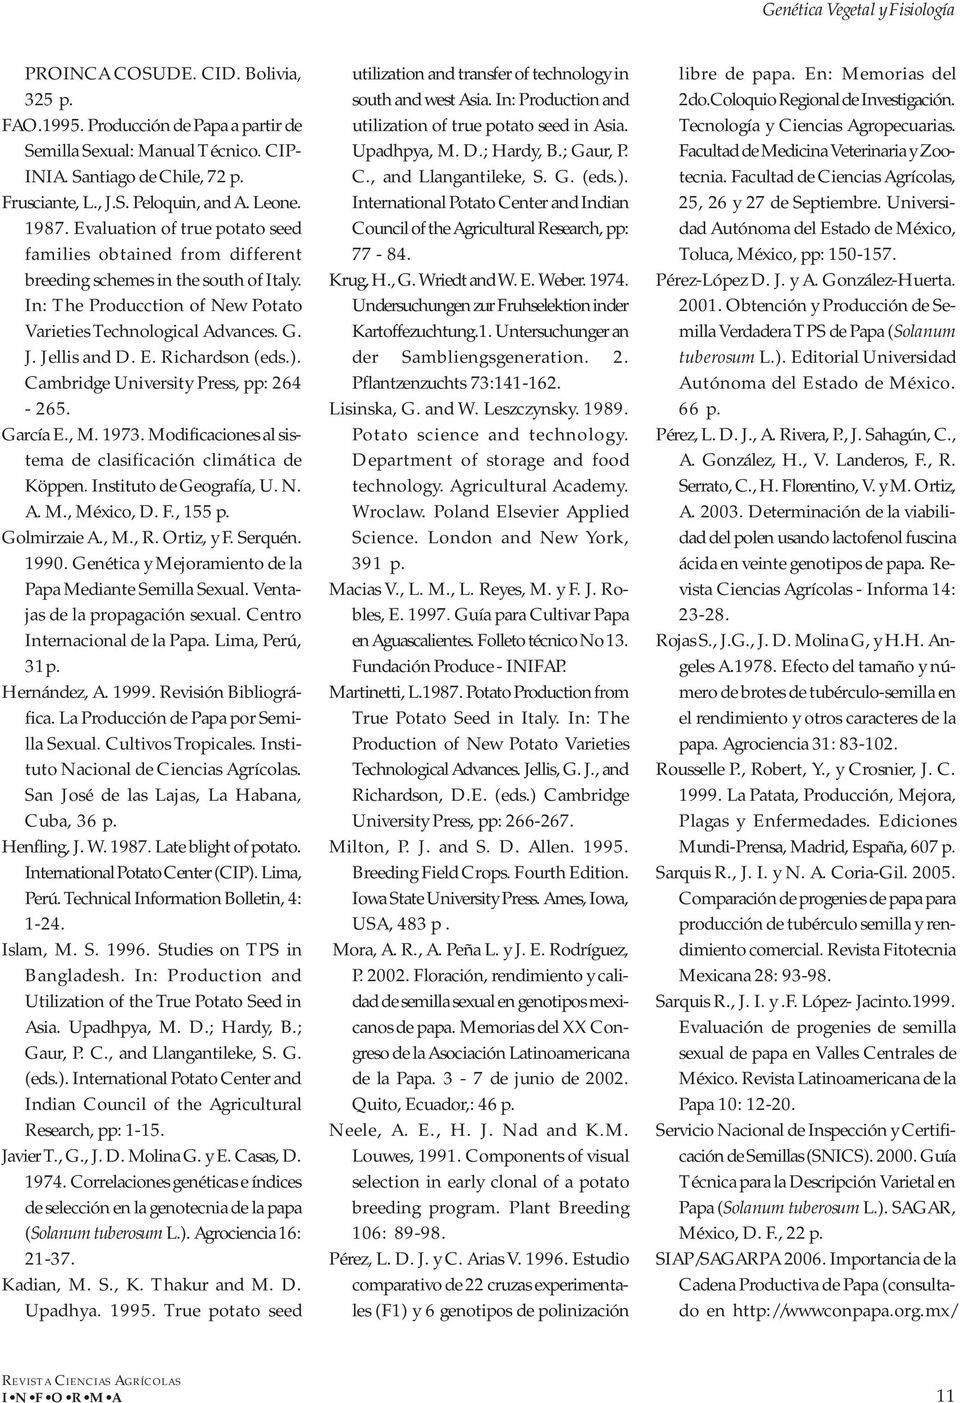 Jellis and D. E. Richardson (eds.). Cambridge University Press, pp: 264-265. García E., M. 1973. Modificaciones al sistema de clasificación climática de Köppen. Instituto de Geografía, U. N. A. M., México, D.